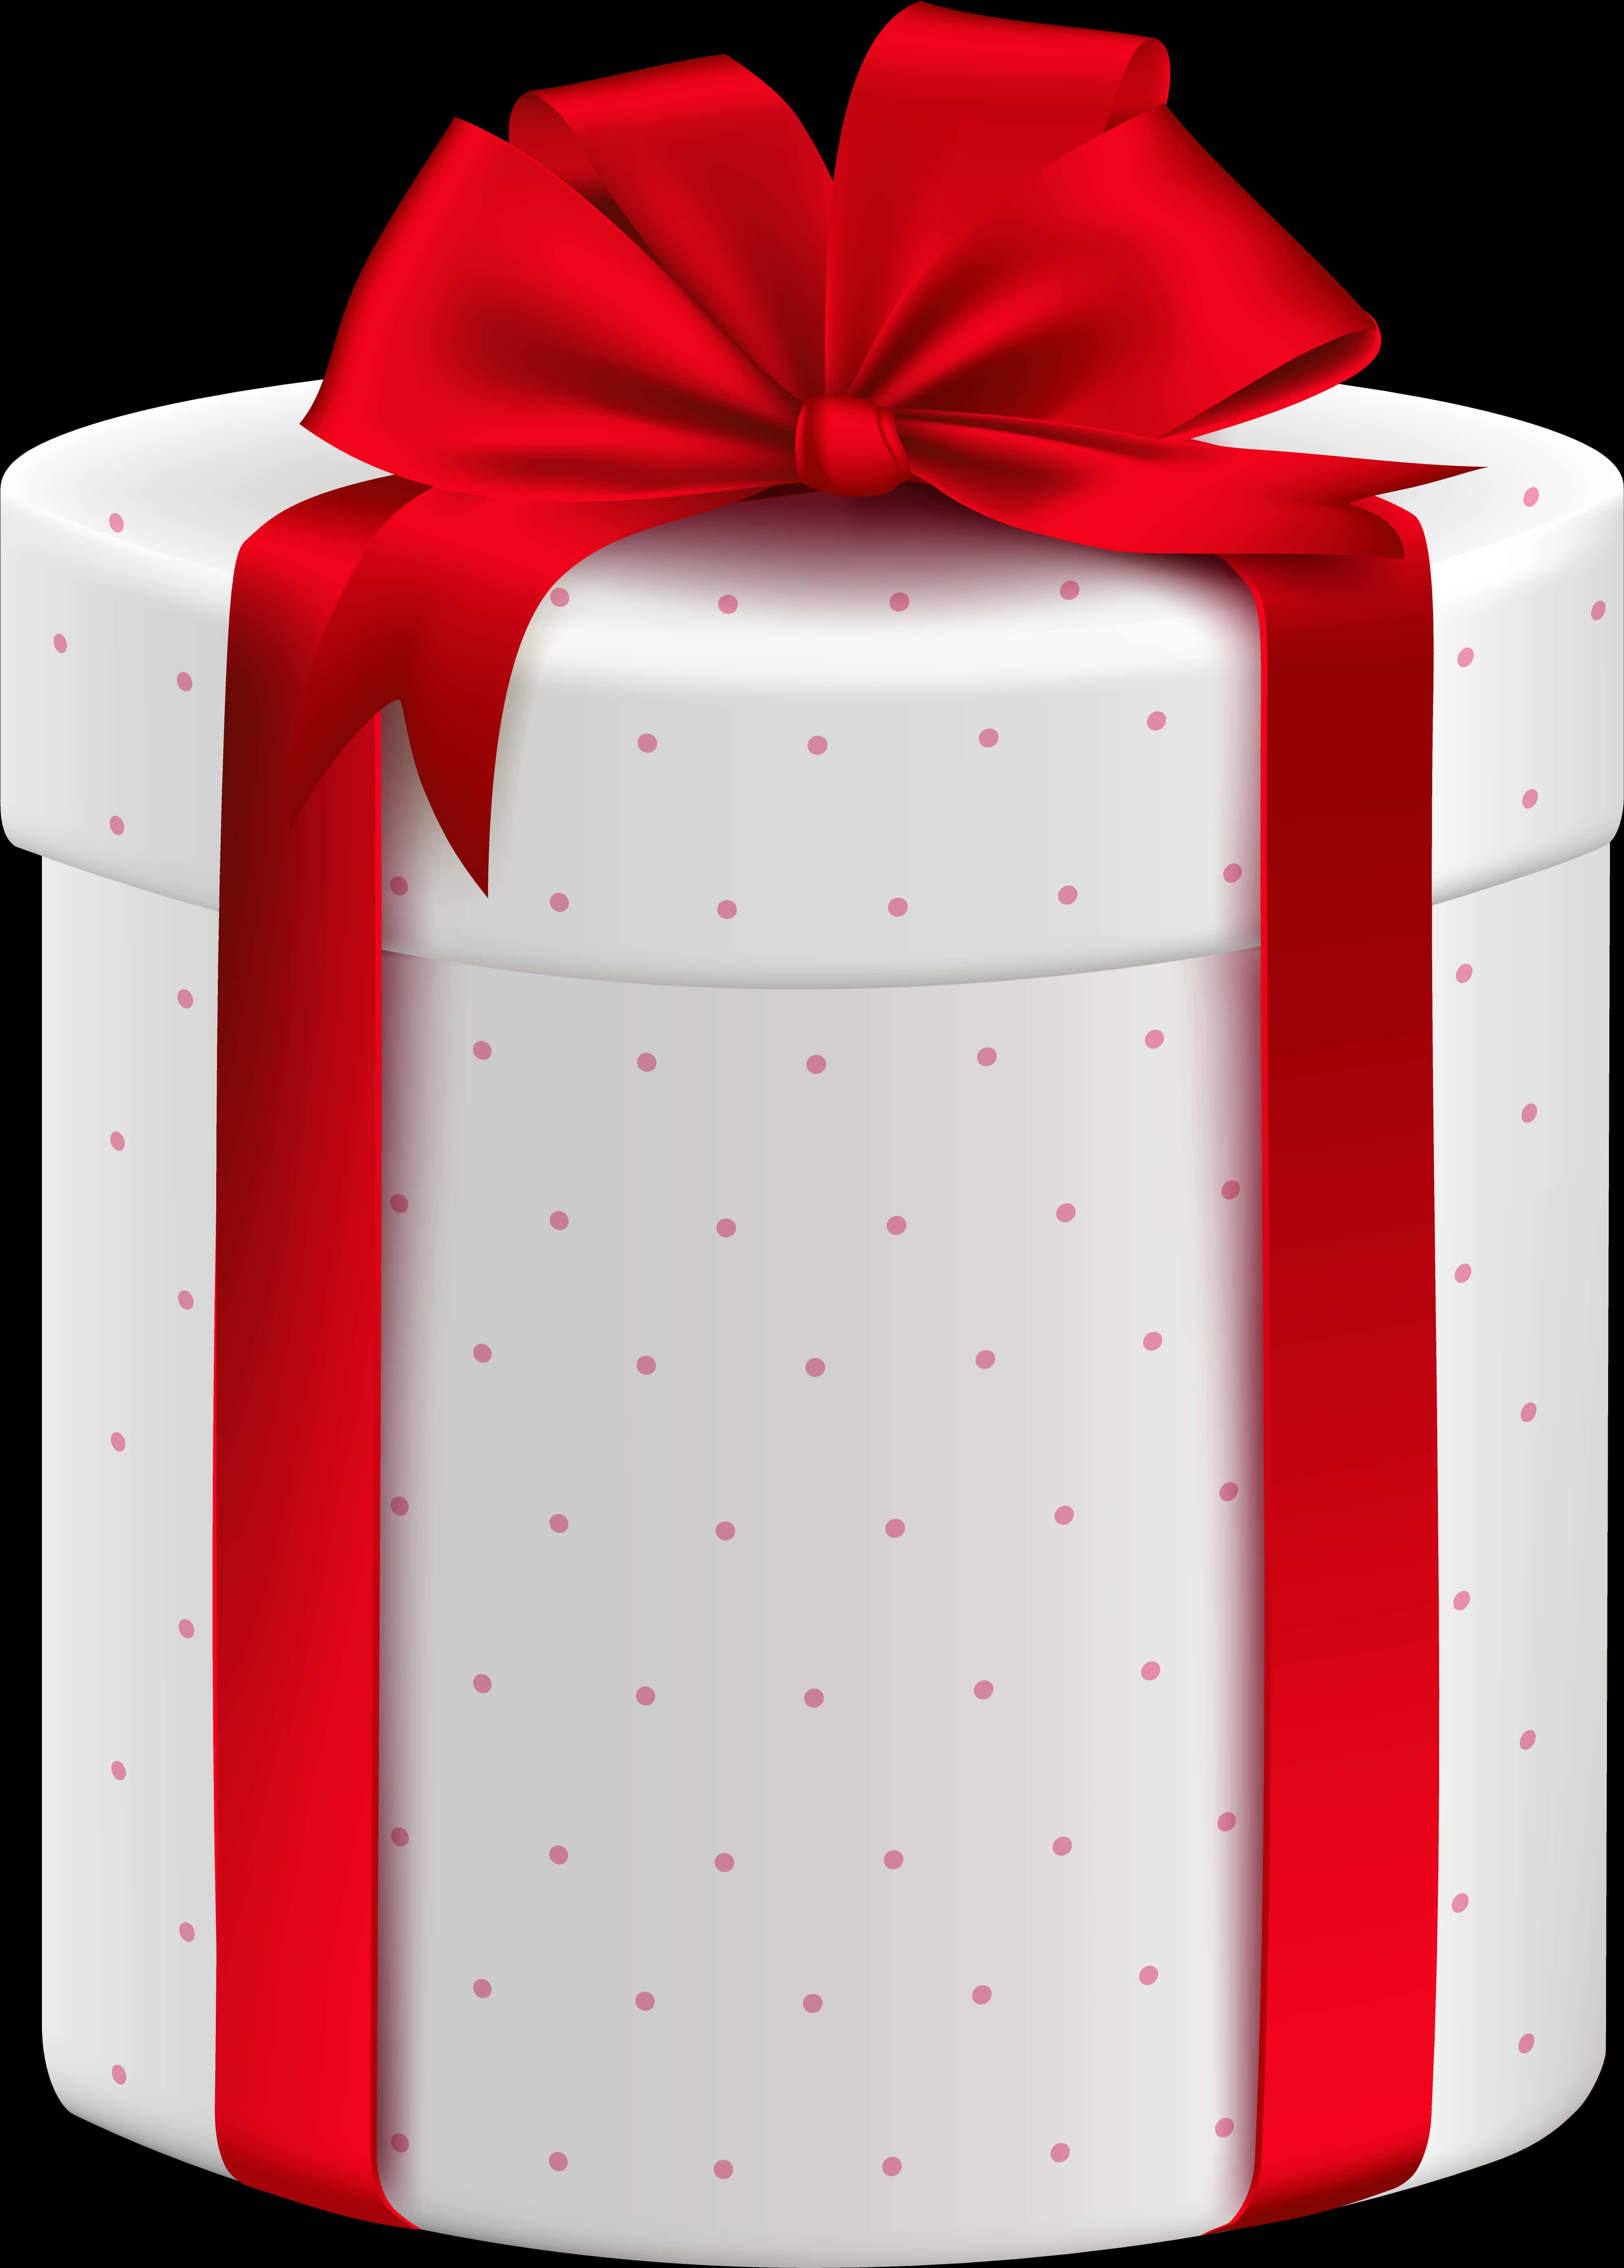 White Round Gift Box